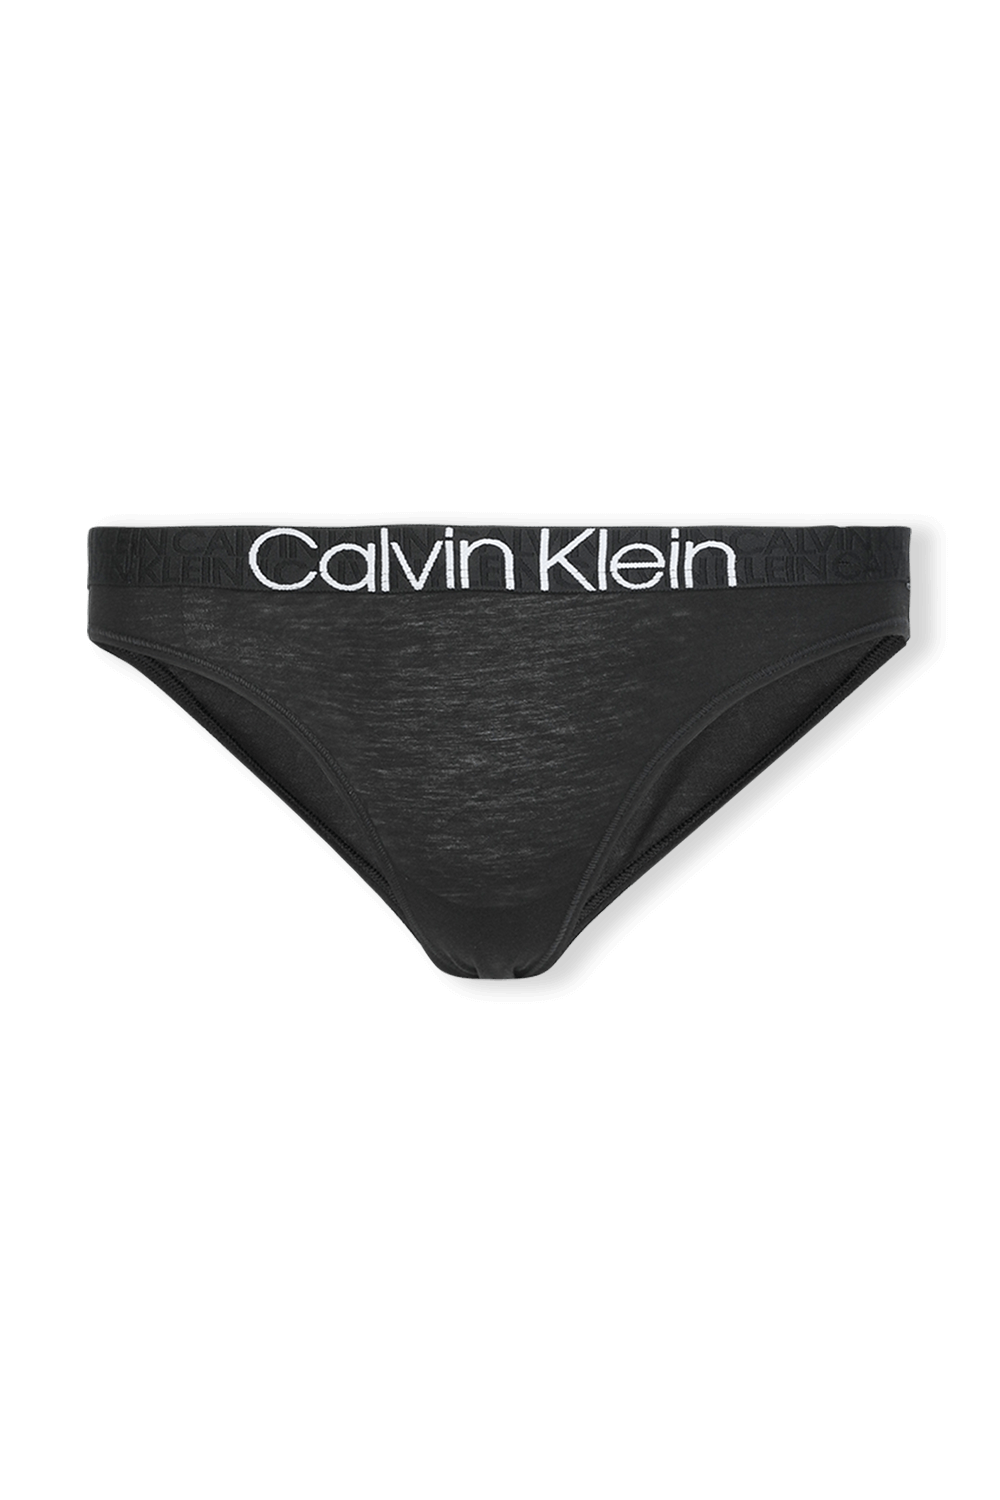 תחתוני בקיני שחורים עם לוגו CALVIN KLEIN